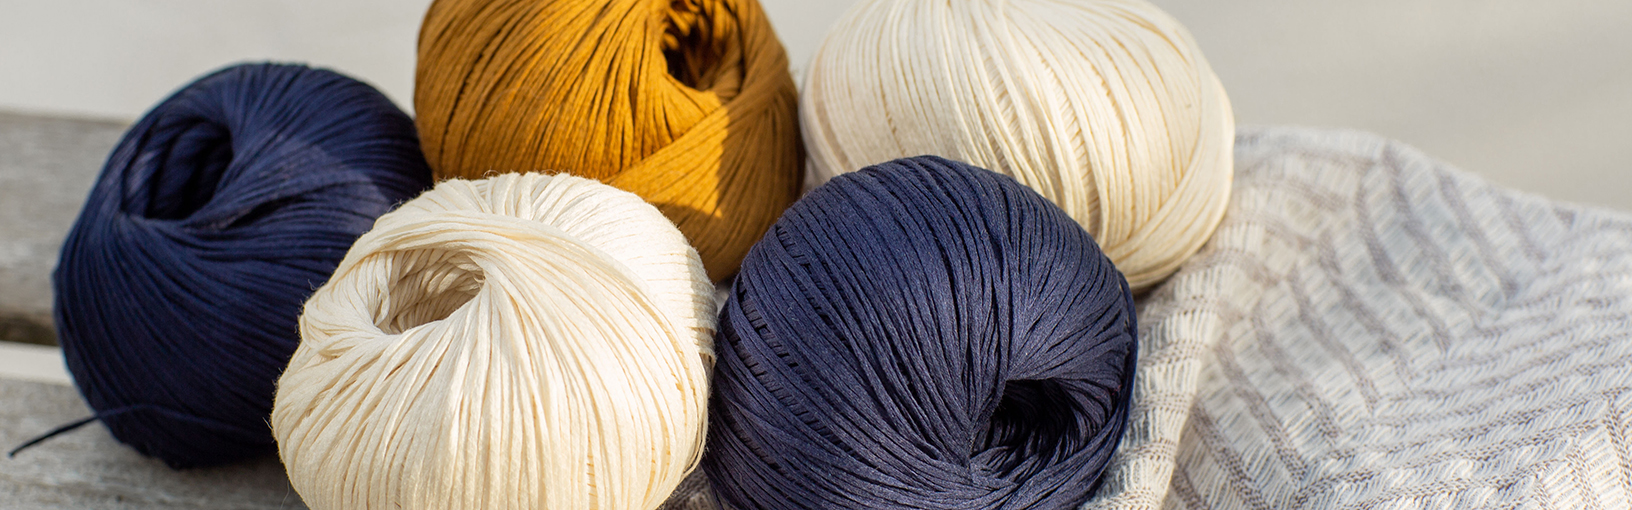 Hilos de alta calidad para tejer, crochet y fieltro Hilos Lana Grossa | lala Berlin & About Berlin